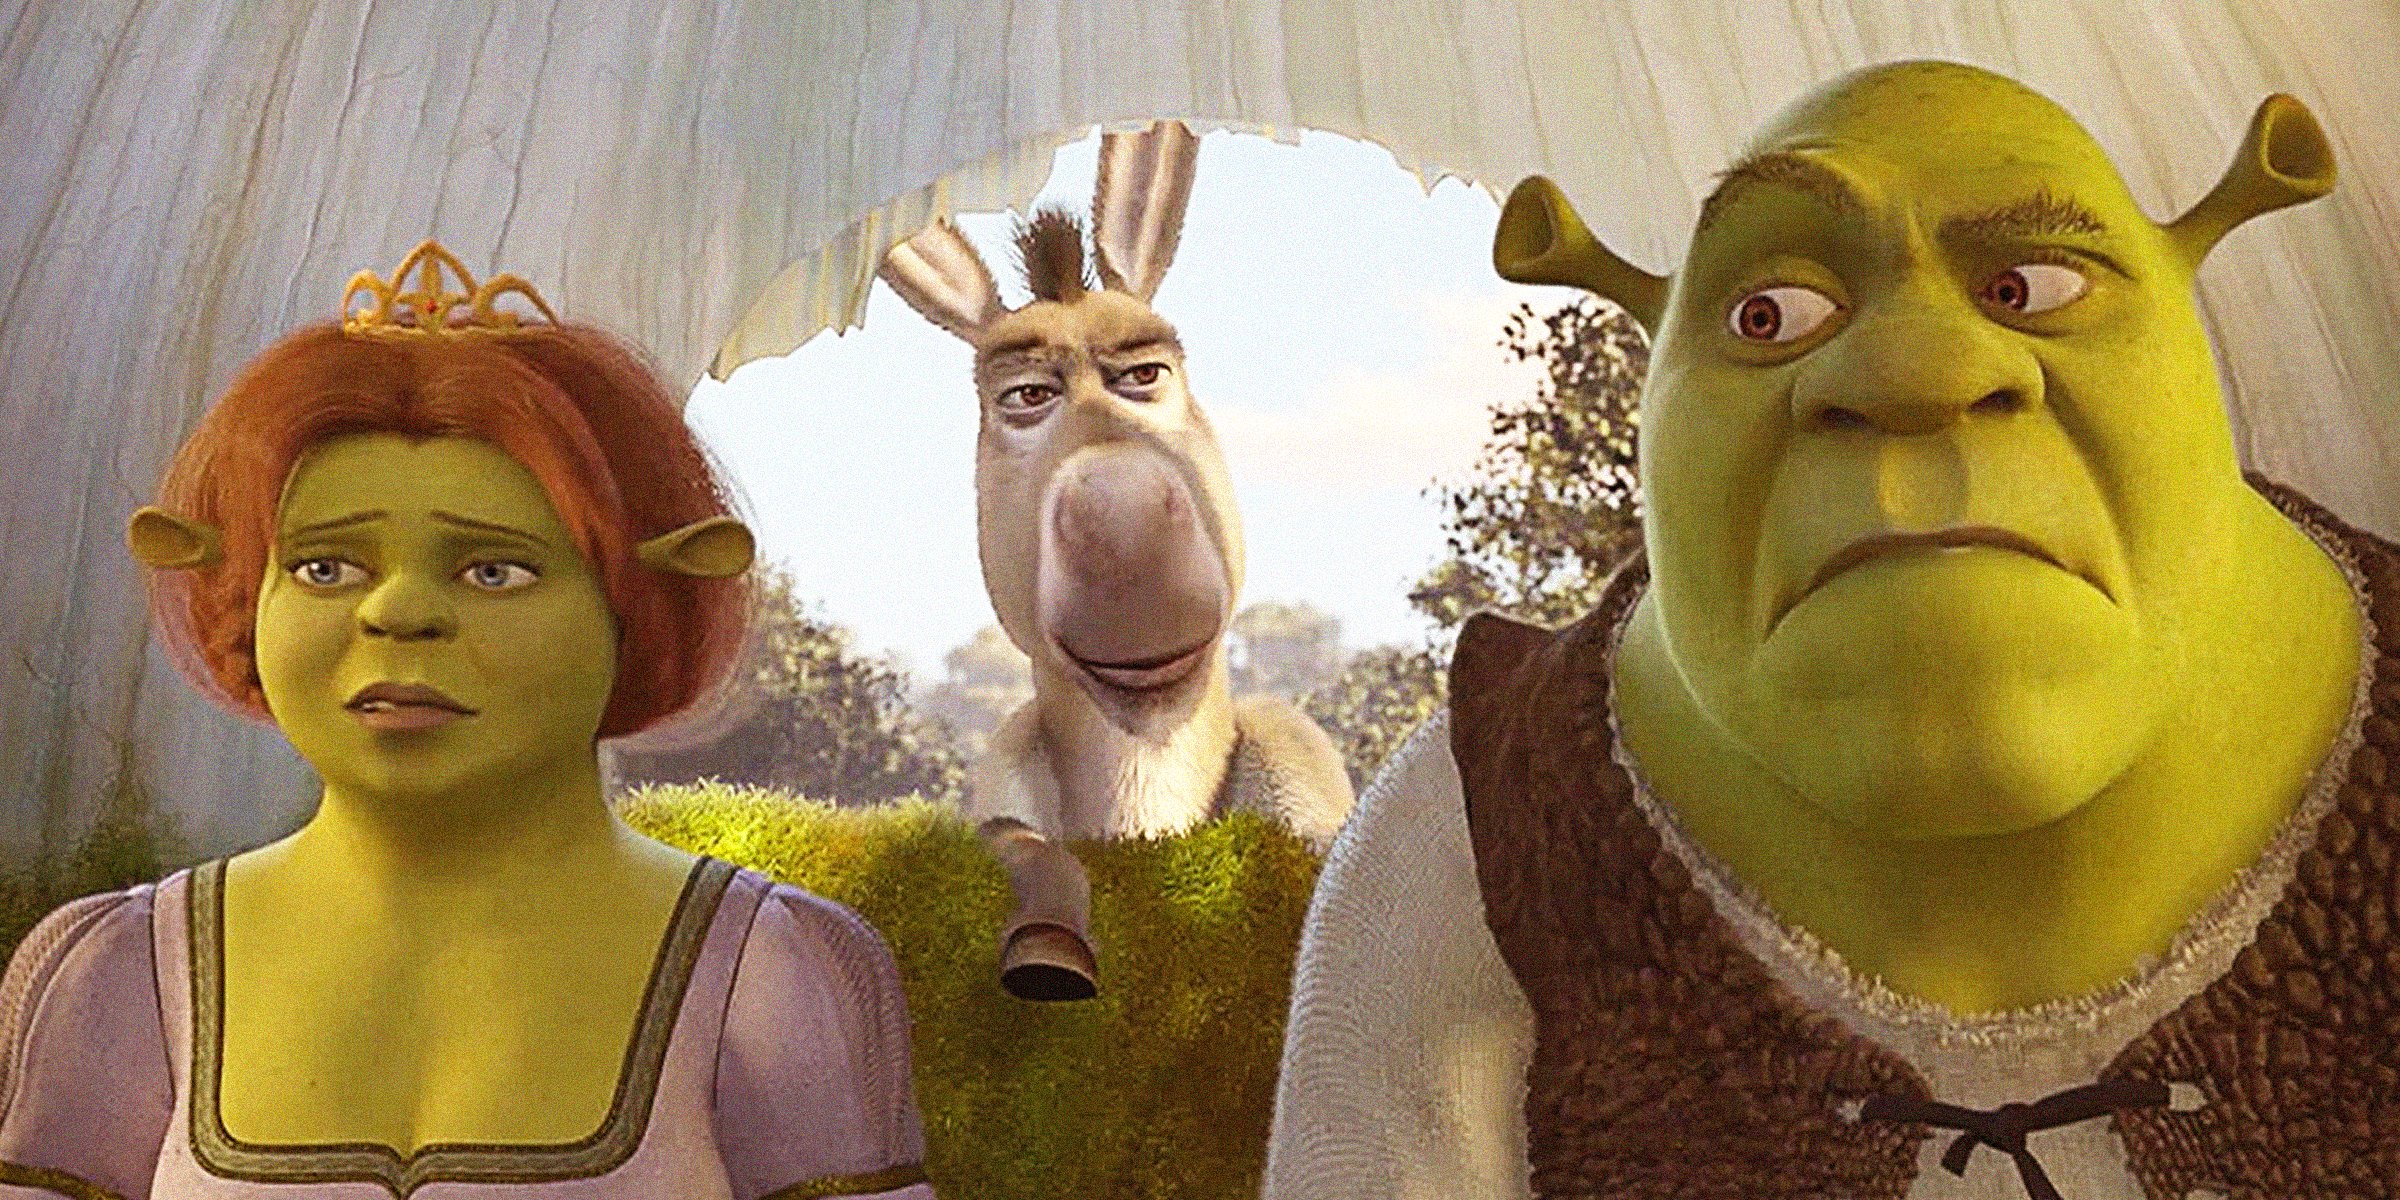 Source: facebook.com/Shrek | Still from the movie "Shrek"